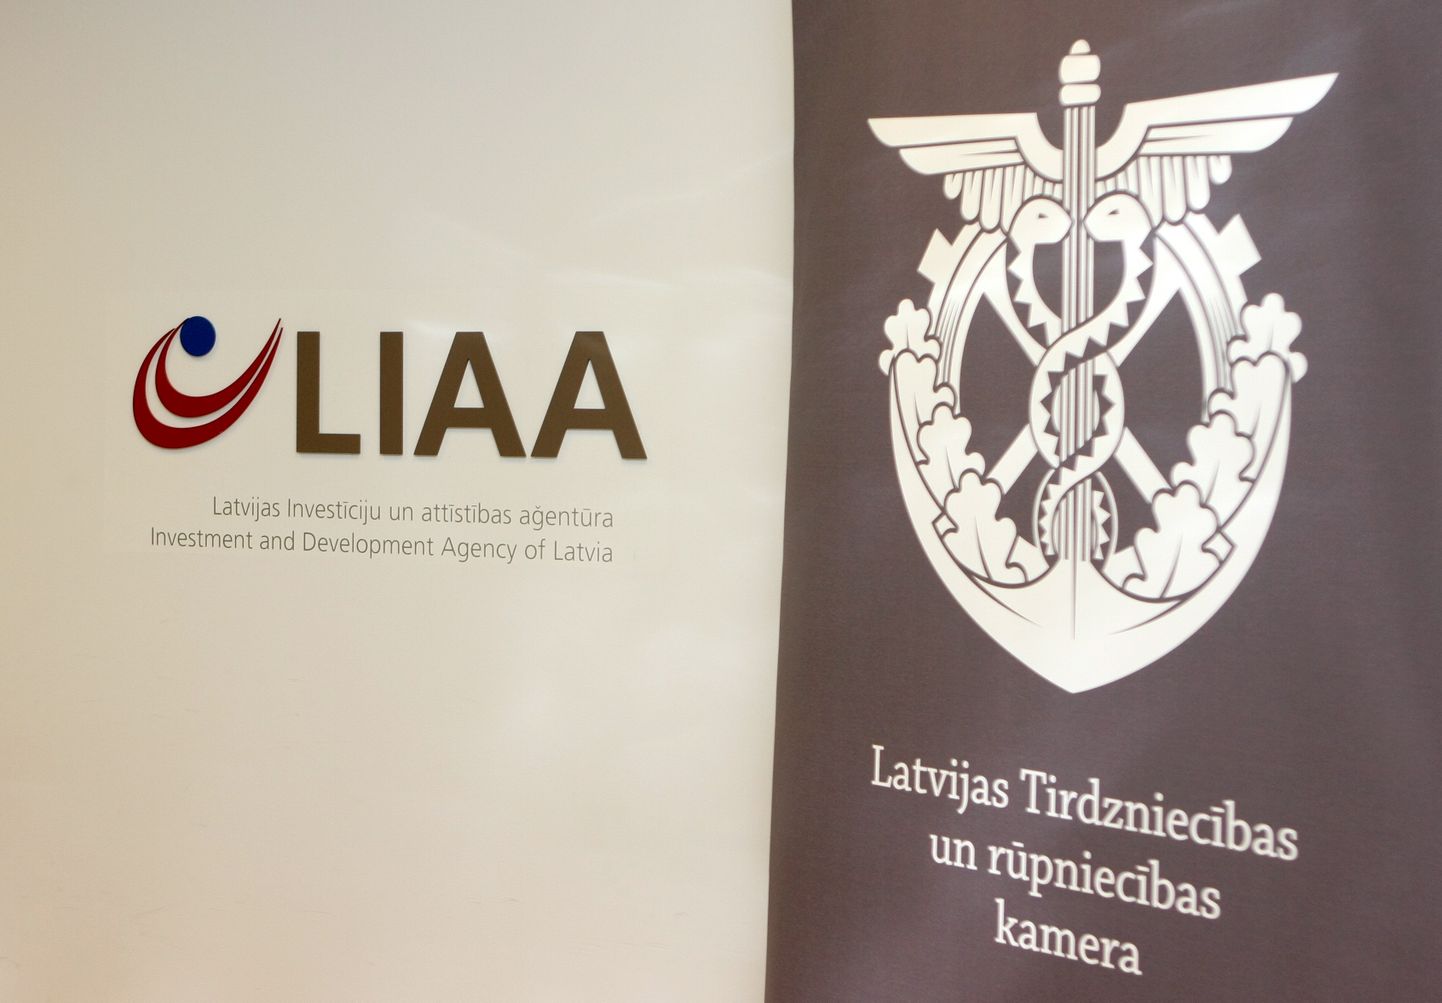 Latvijas Investīciju un attīstības aģentūras telpās tiks parakstīts līgums starp Latvijas Investīciju un attīstības aģentūru un Latvijas Tirdzniecības un rūpniecības kameru par uzņēmēju apmācības projekta ''Produktivitātes evolūcija'' īstenošanu.